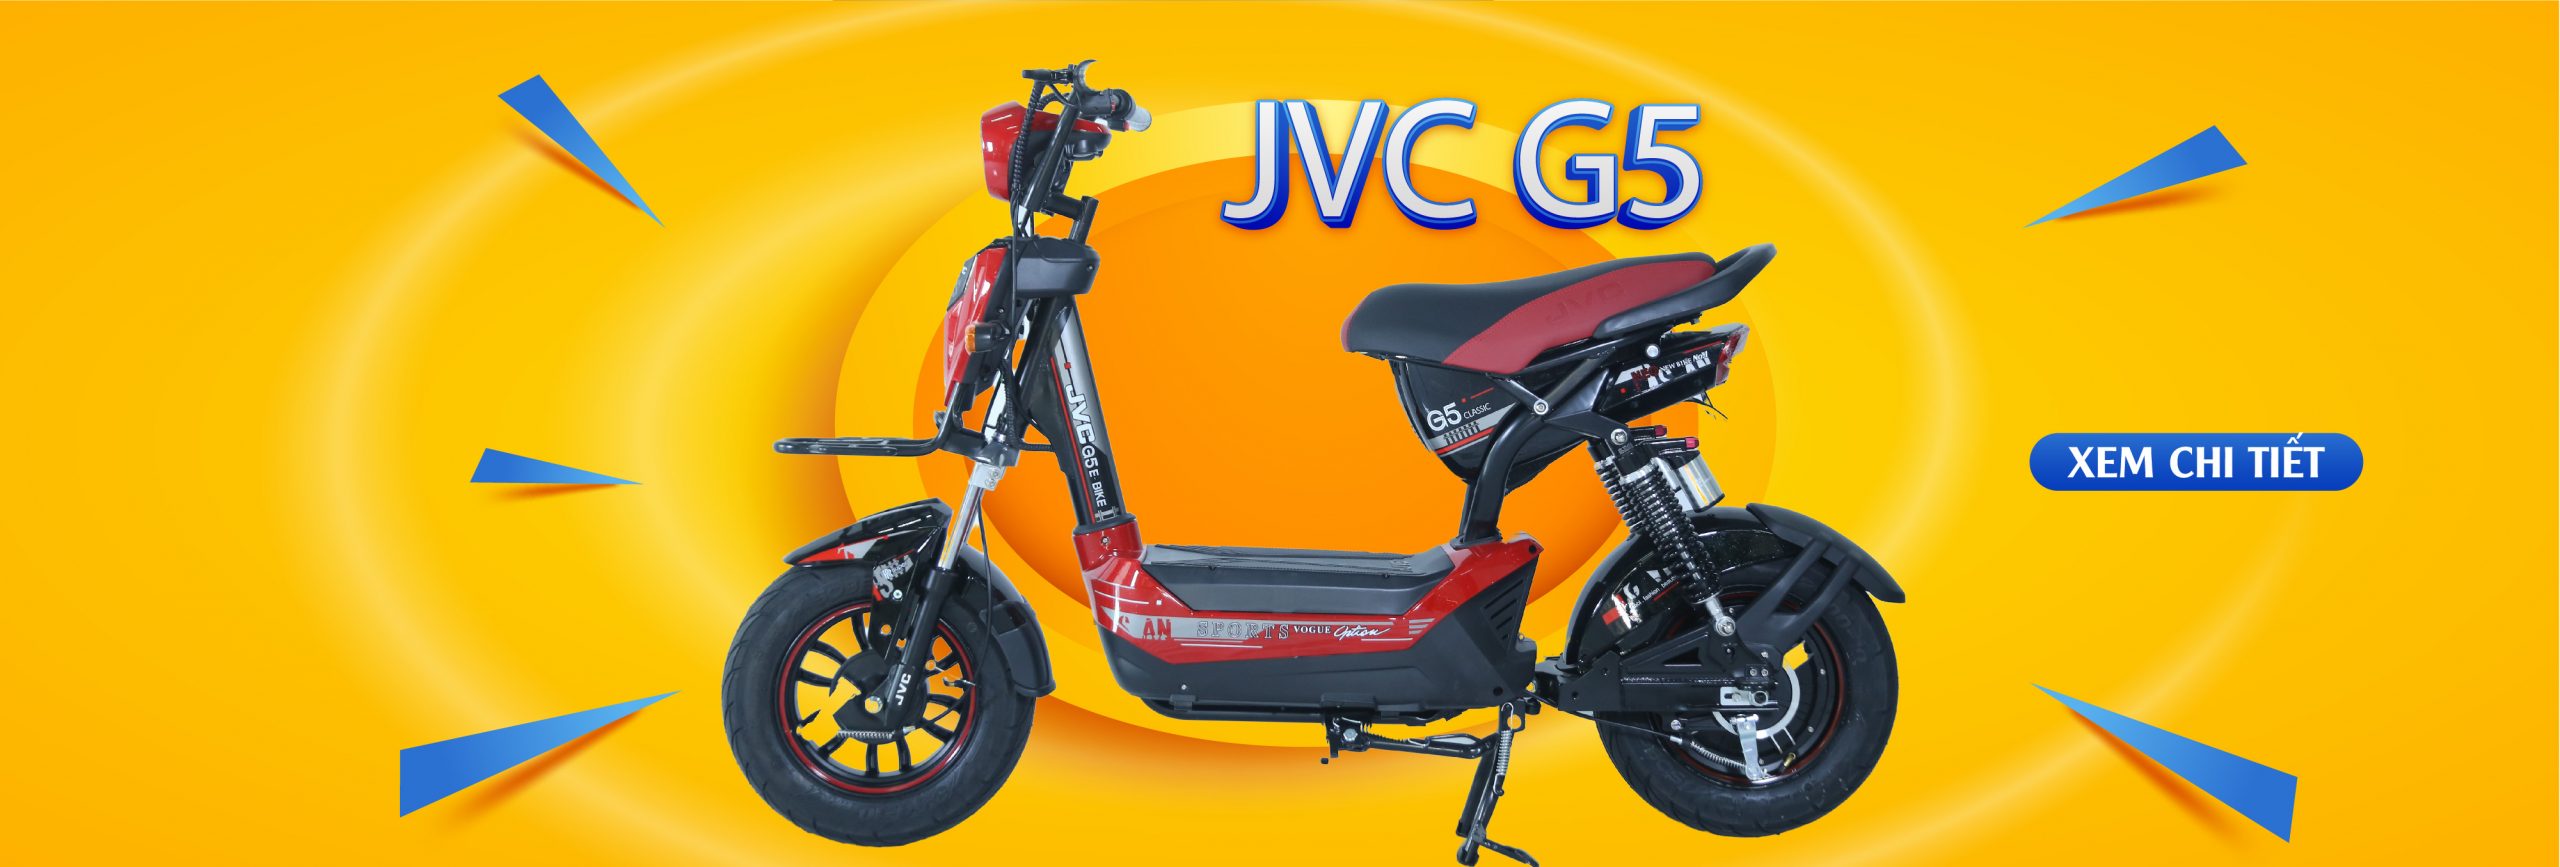 Xe máy điện JVC G5 